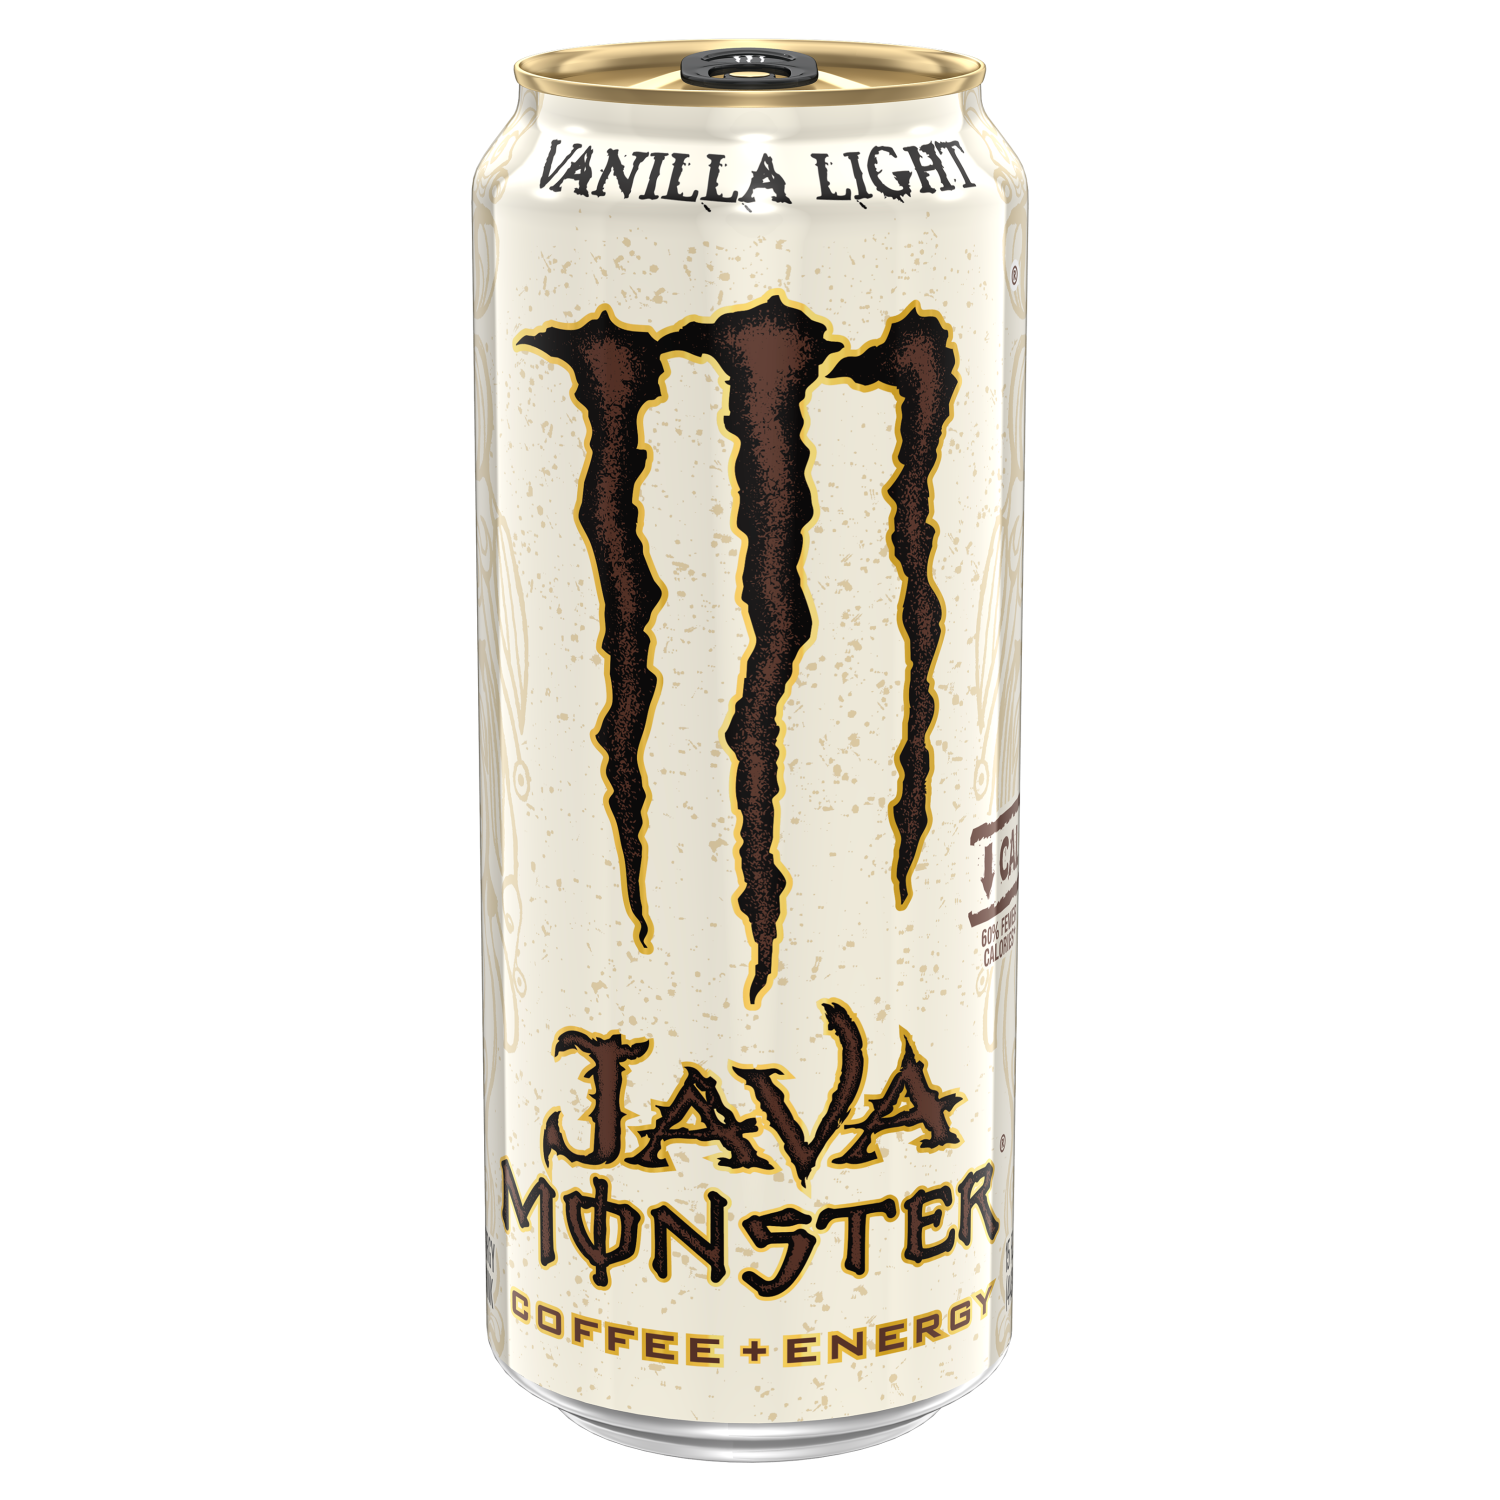 slide 1 of 2, Monster Energy Monster Vanilla Light Java Coffee + Energy Drink, 15 fl oz